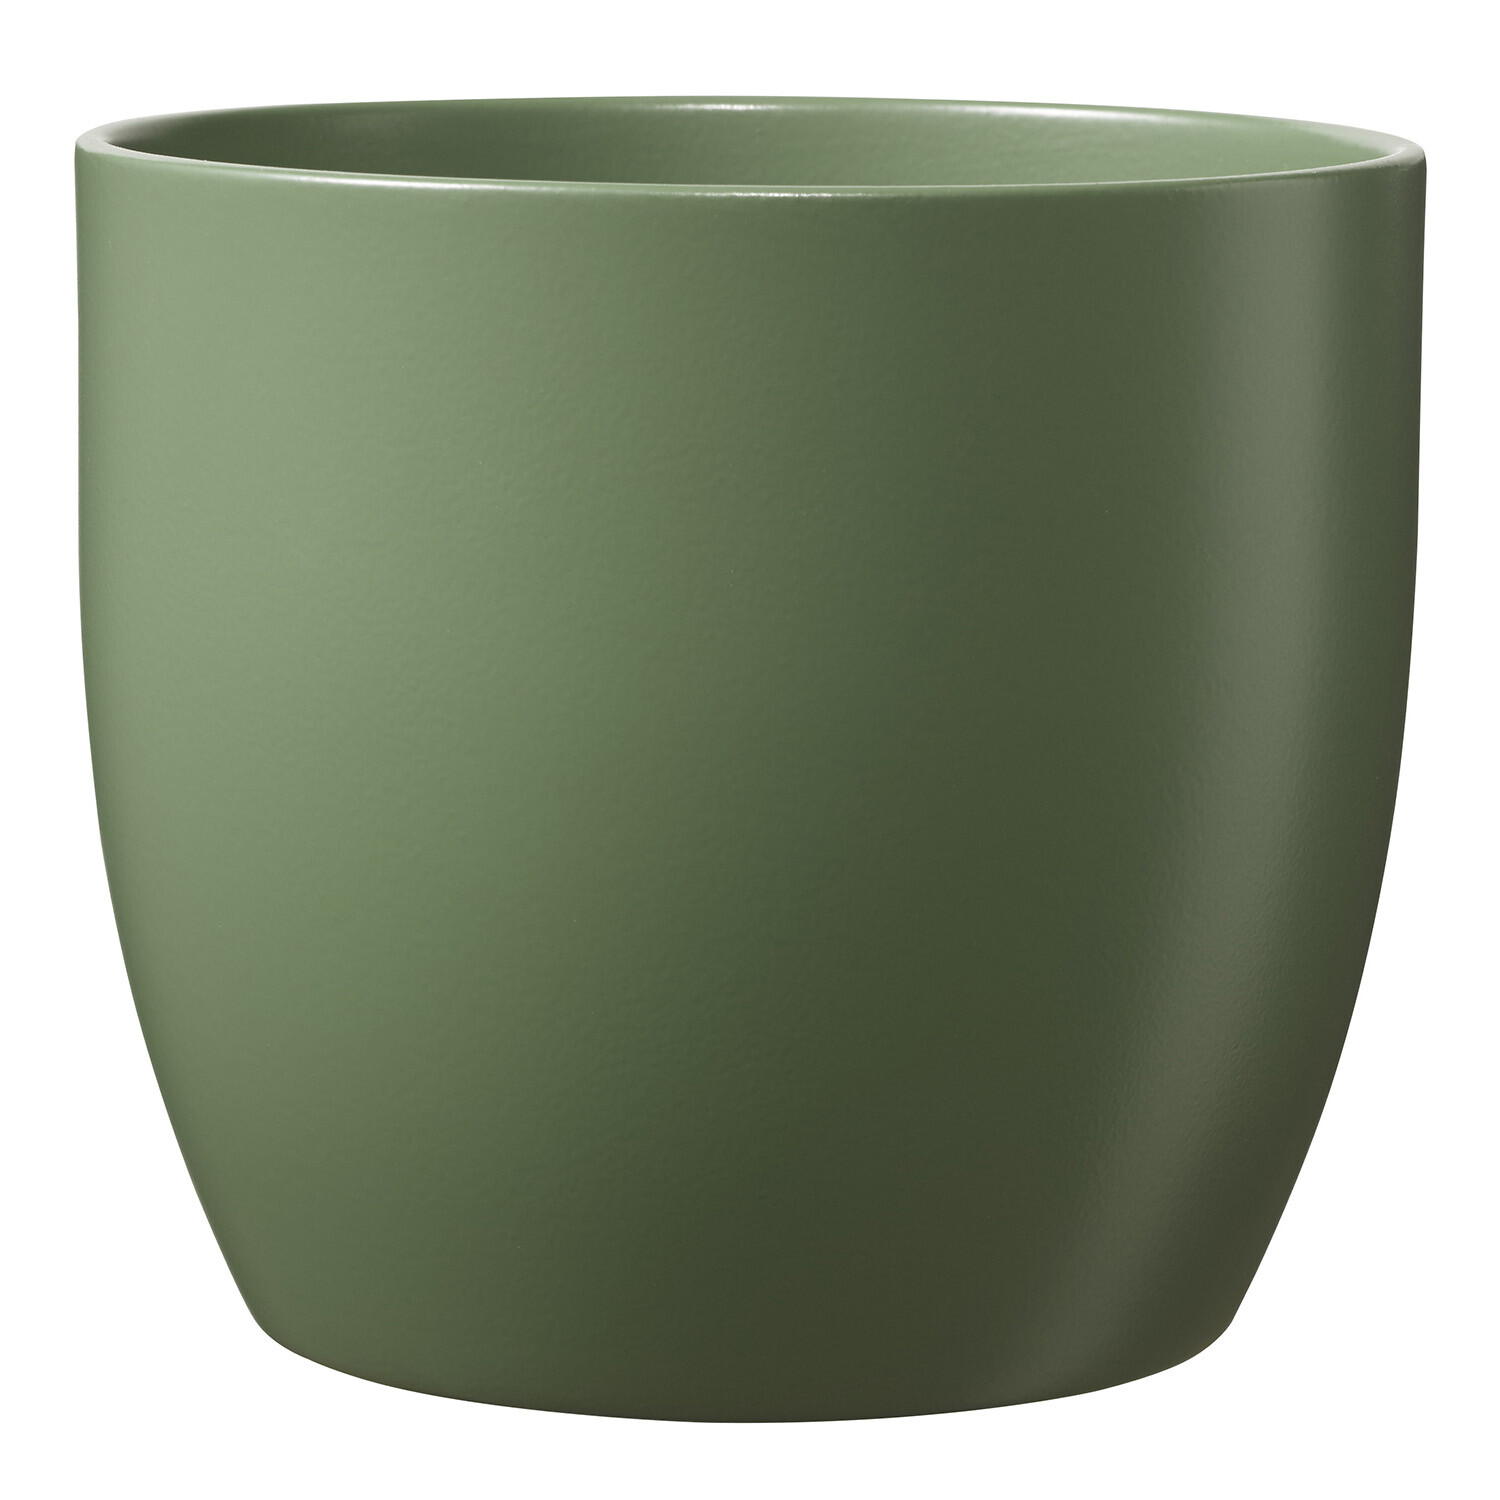 Soendgen Basel Moss Green Pot Cover 18cm Image